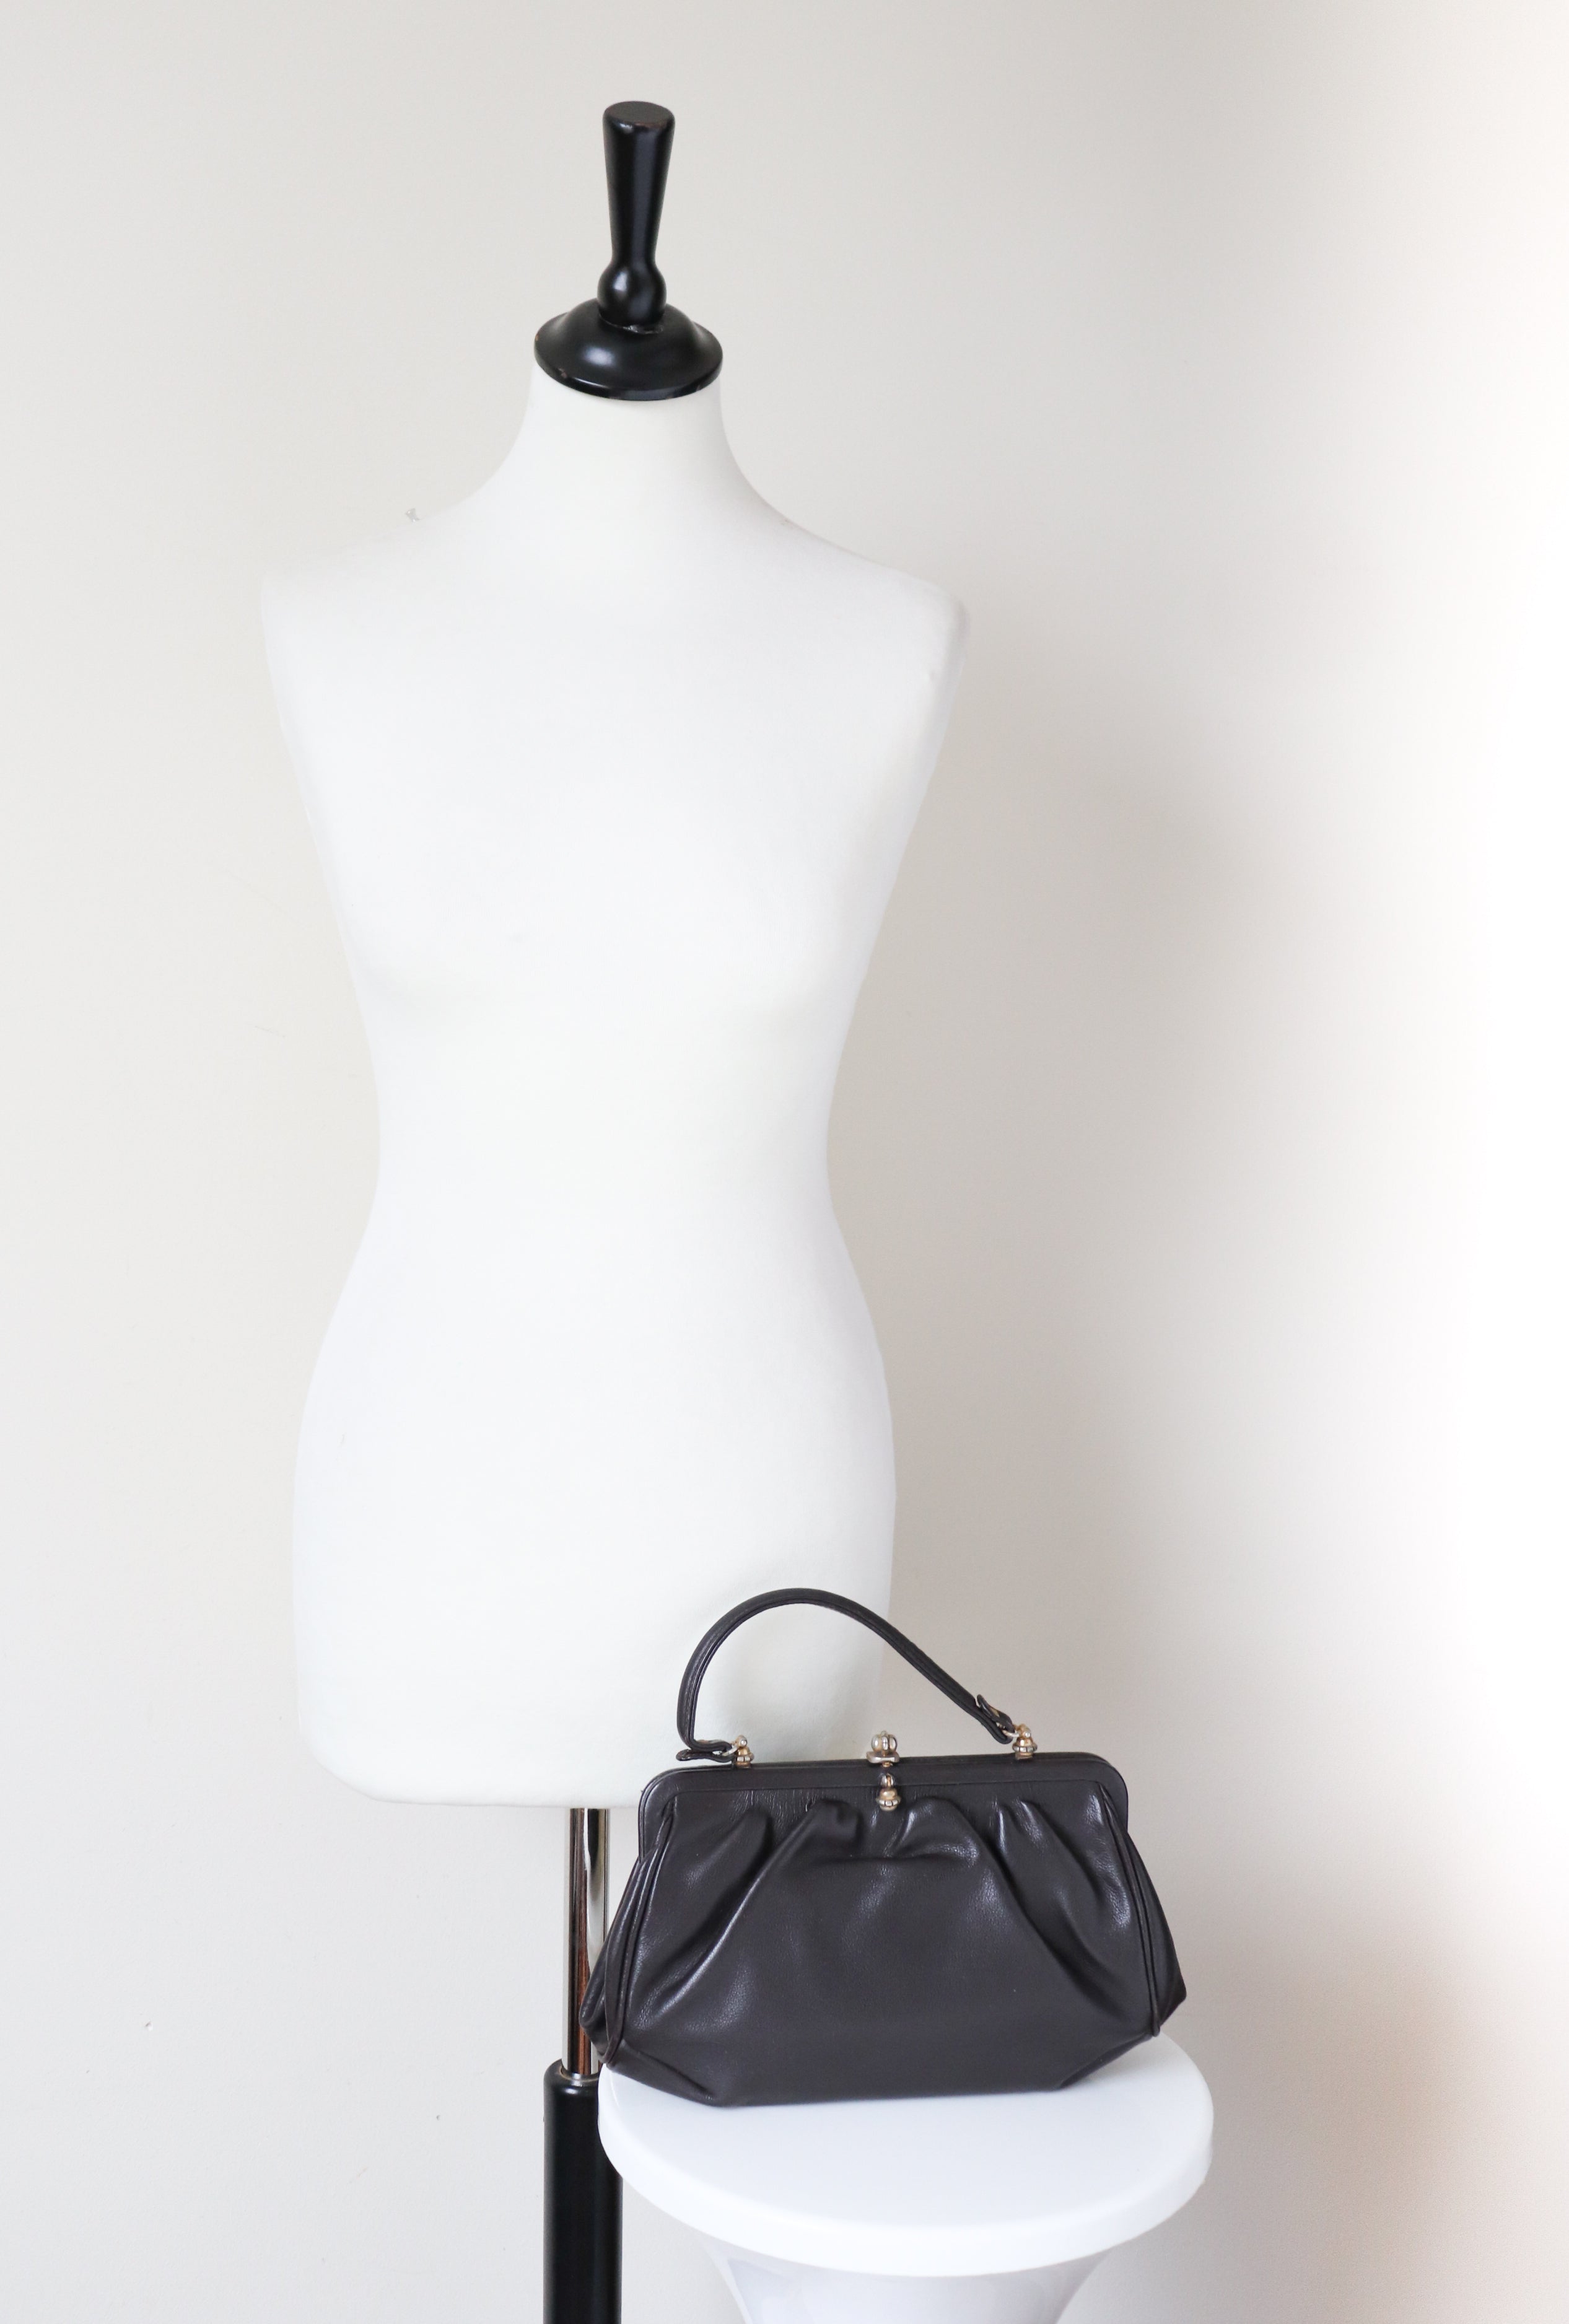 Vintage 1950s Top Handle Bag - Handbag - Brown Leather - Small